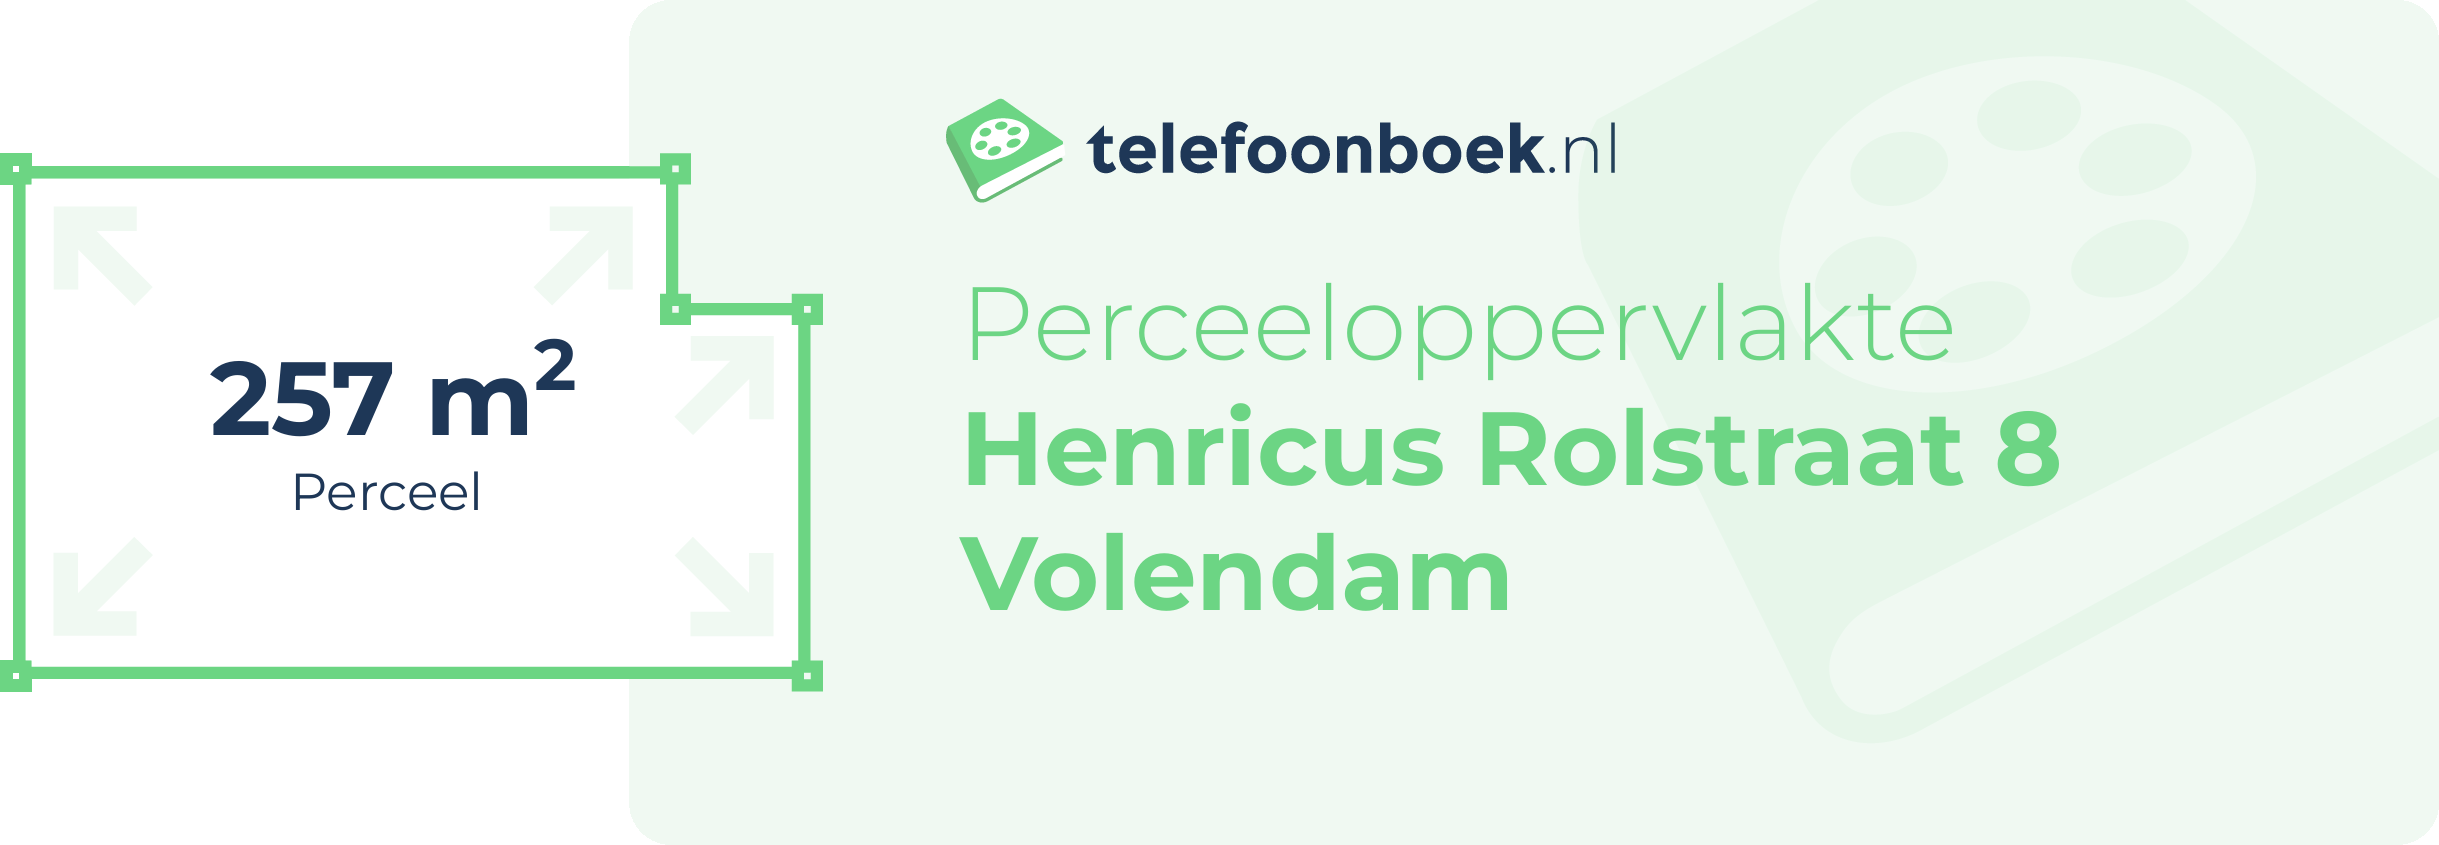 Perceeloppervlakte Henricus Rolstraat 8 Volendam